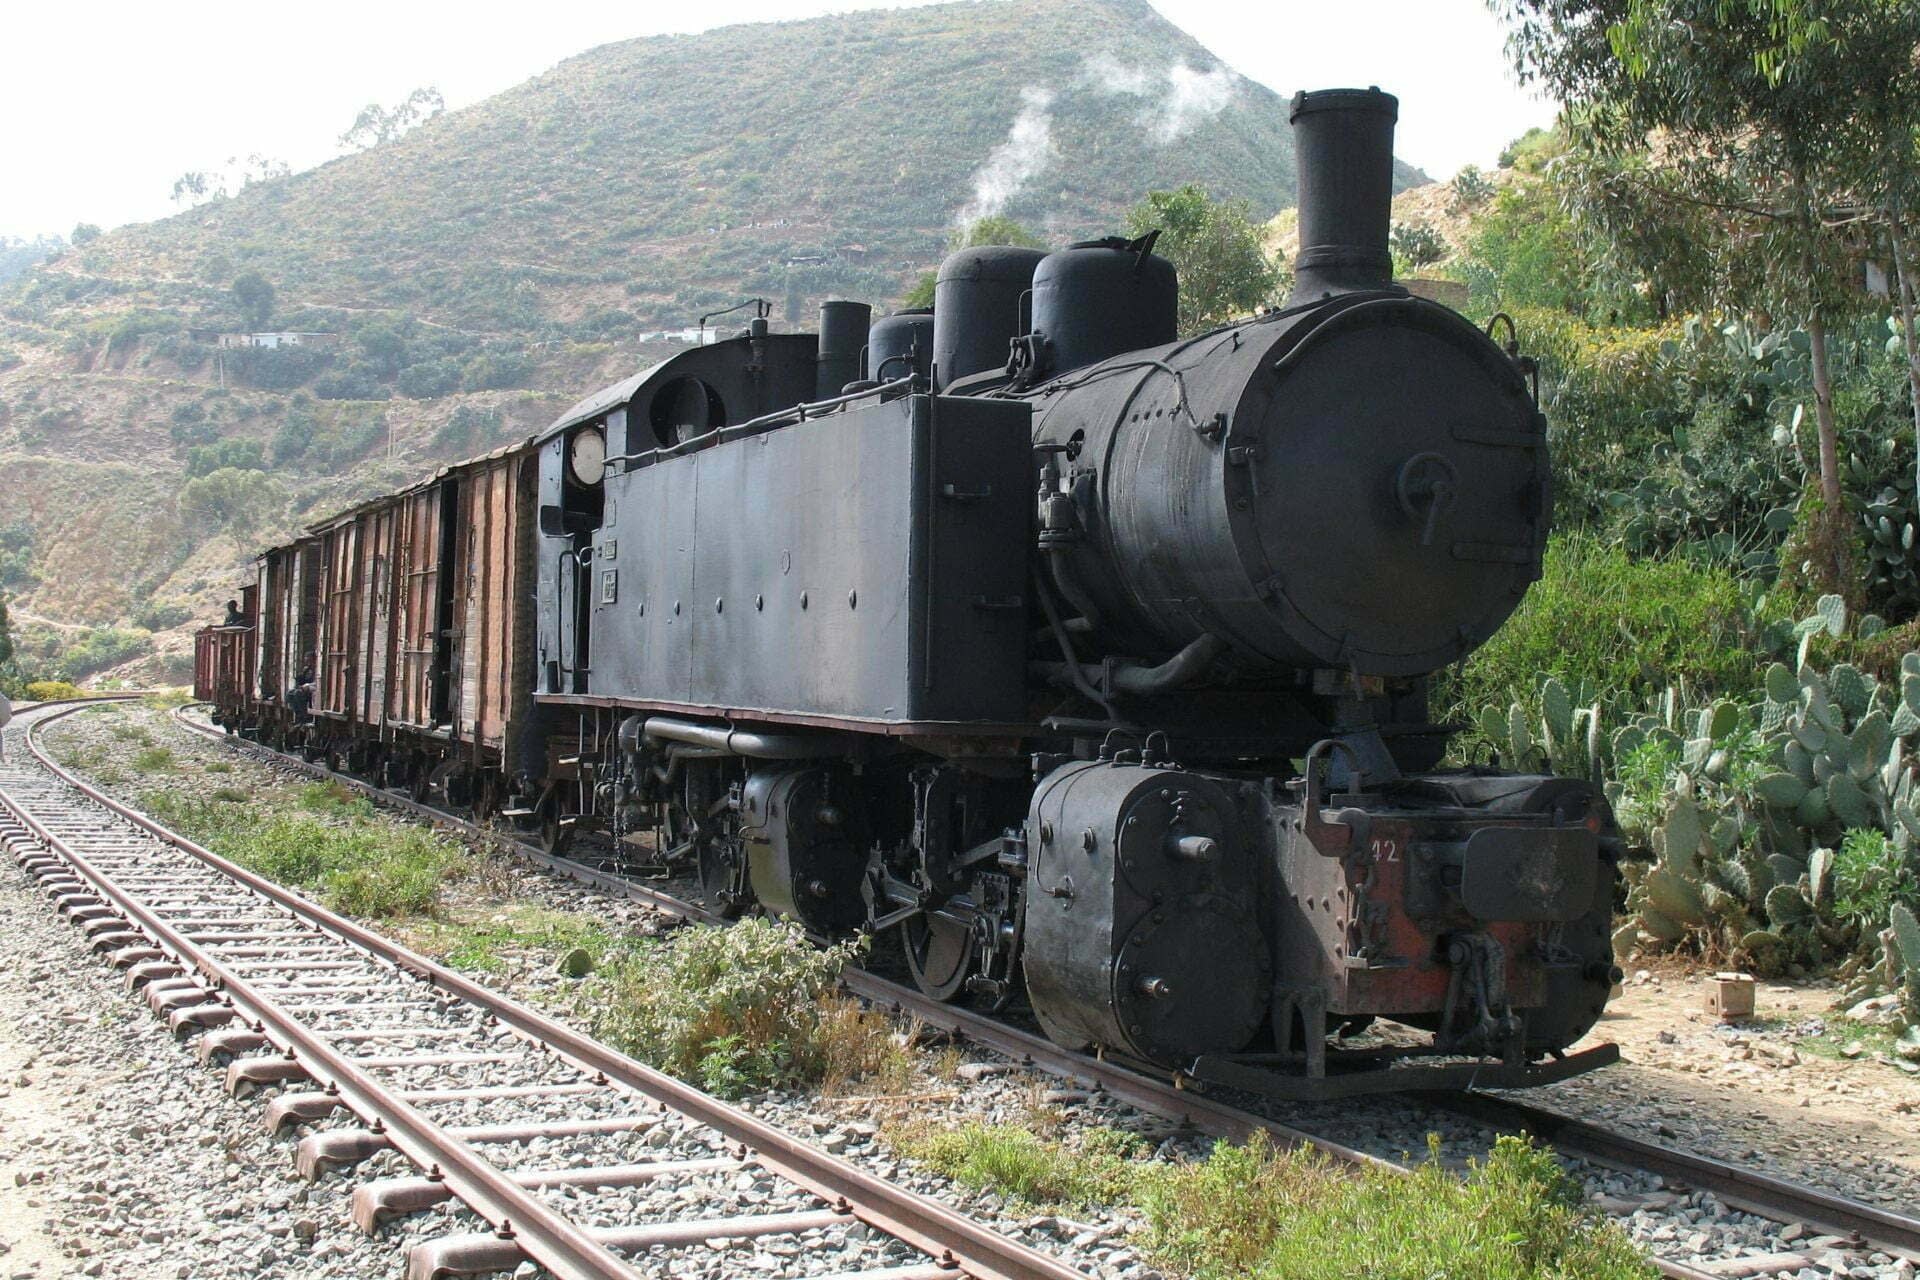 steam locomotive in Eritrea - Archeological tour to Eritrea - The Eritrean Railway